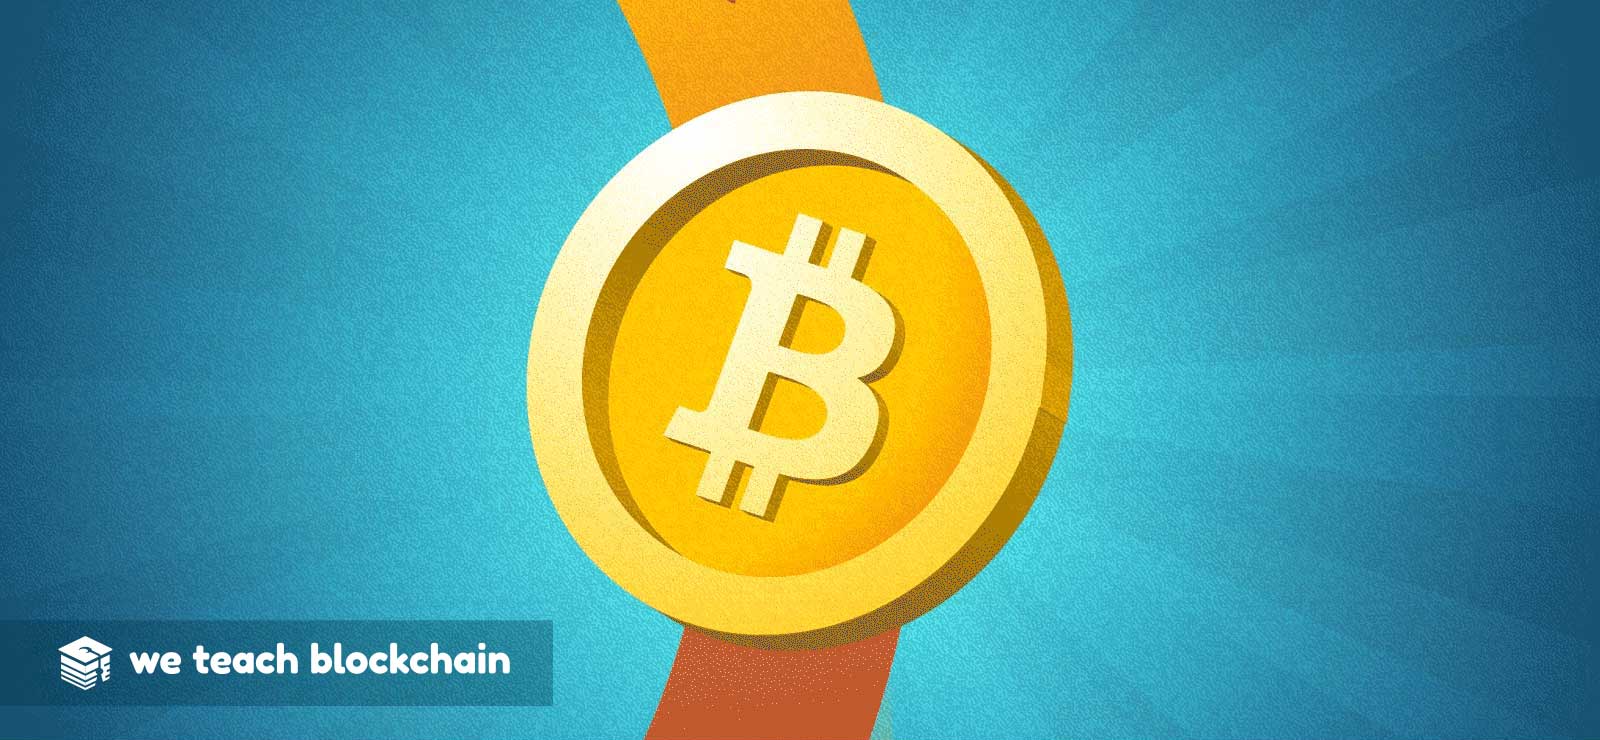 A representation of a bitcoin